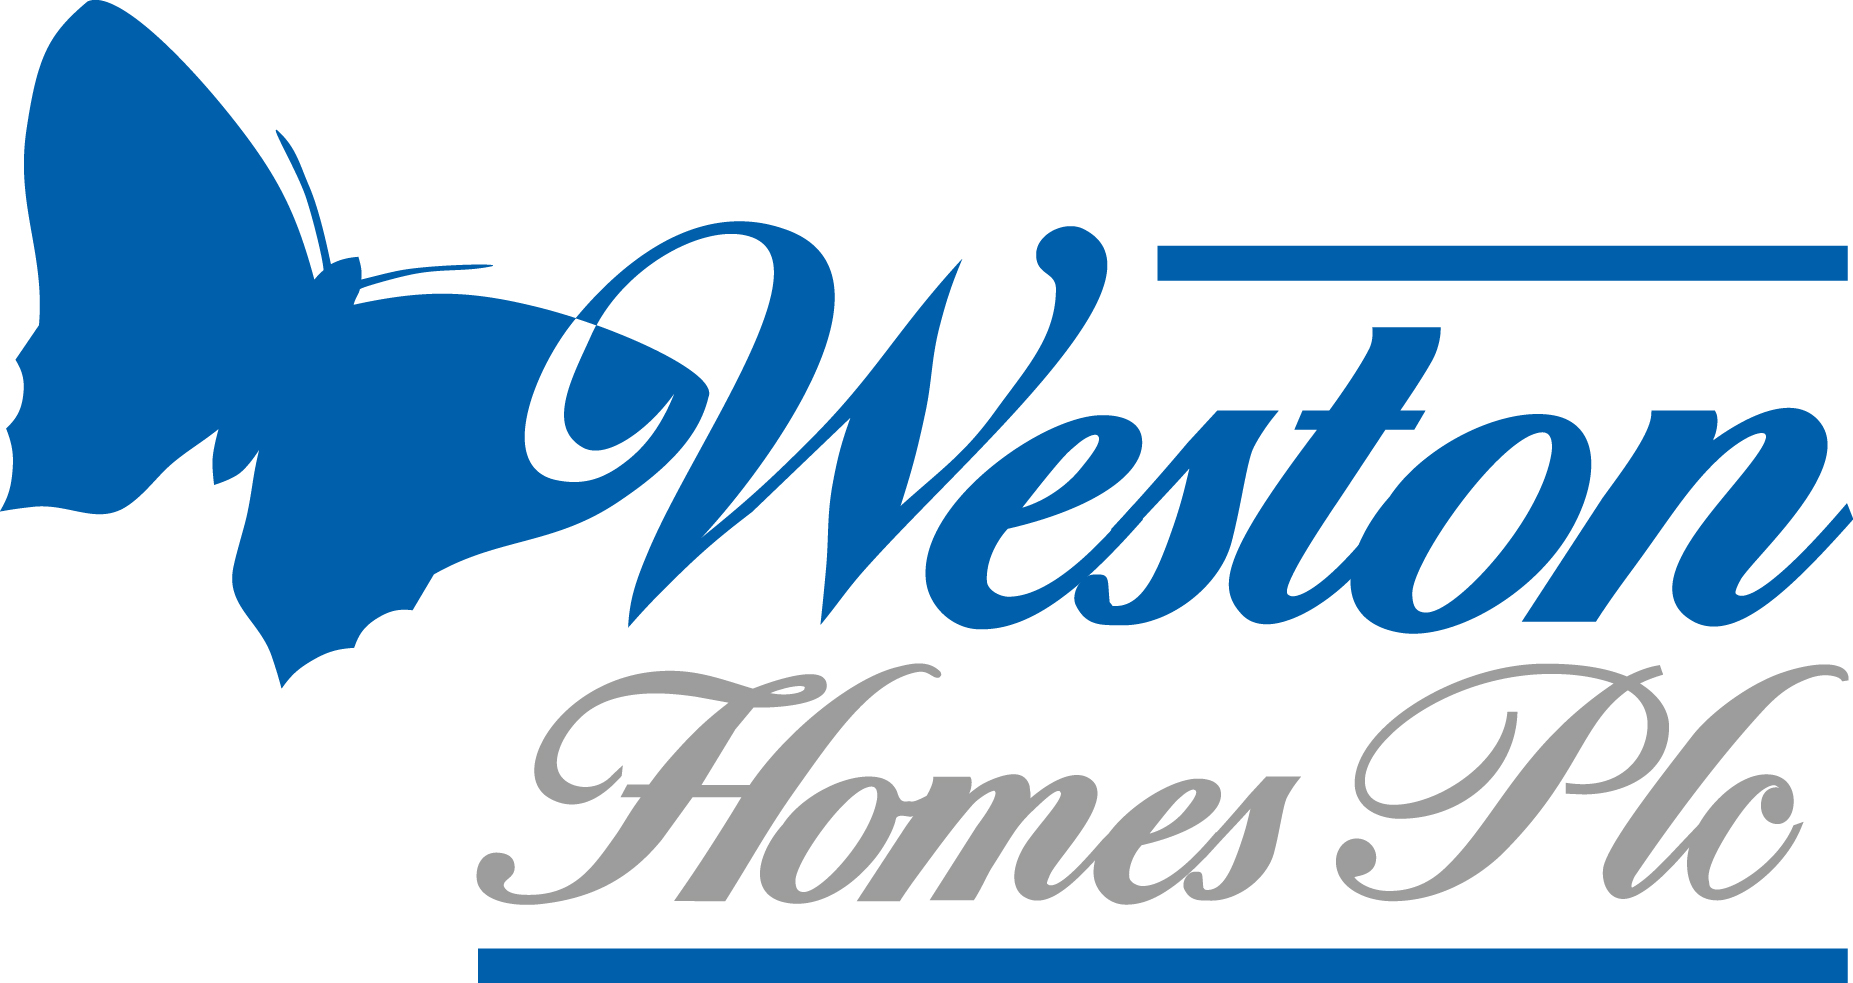 Weston-Homes-Plc-logo-RGB.jpg